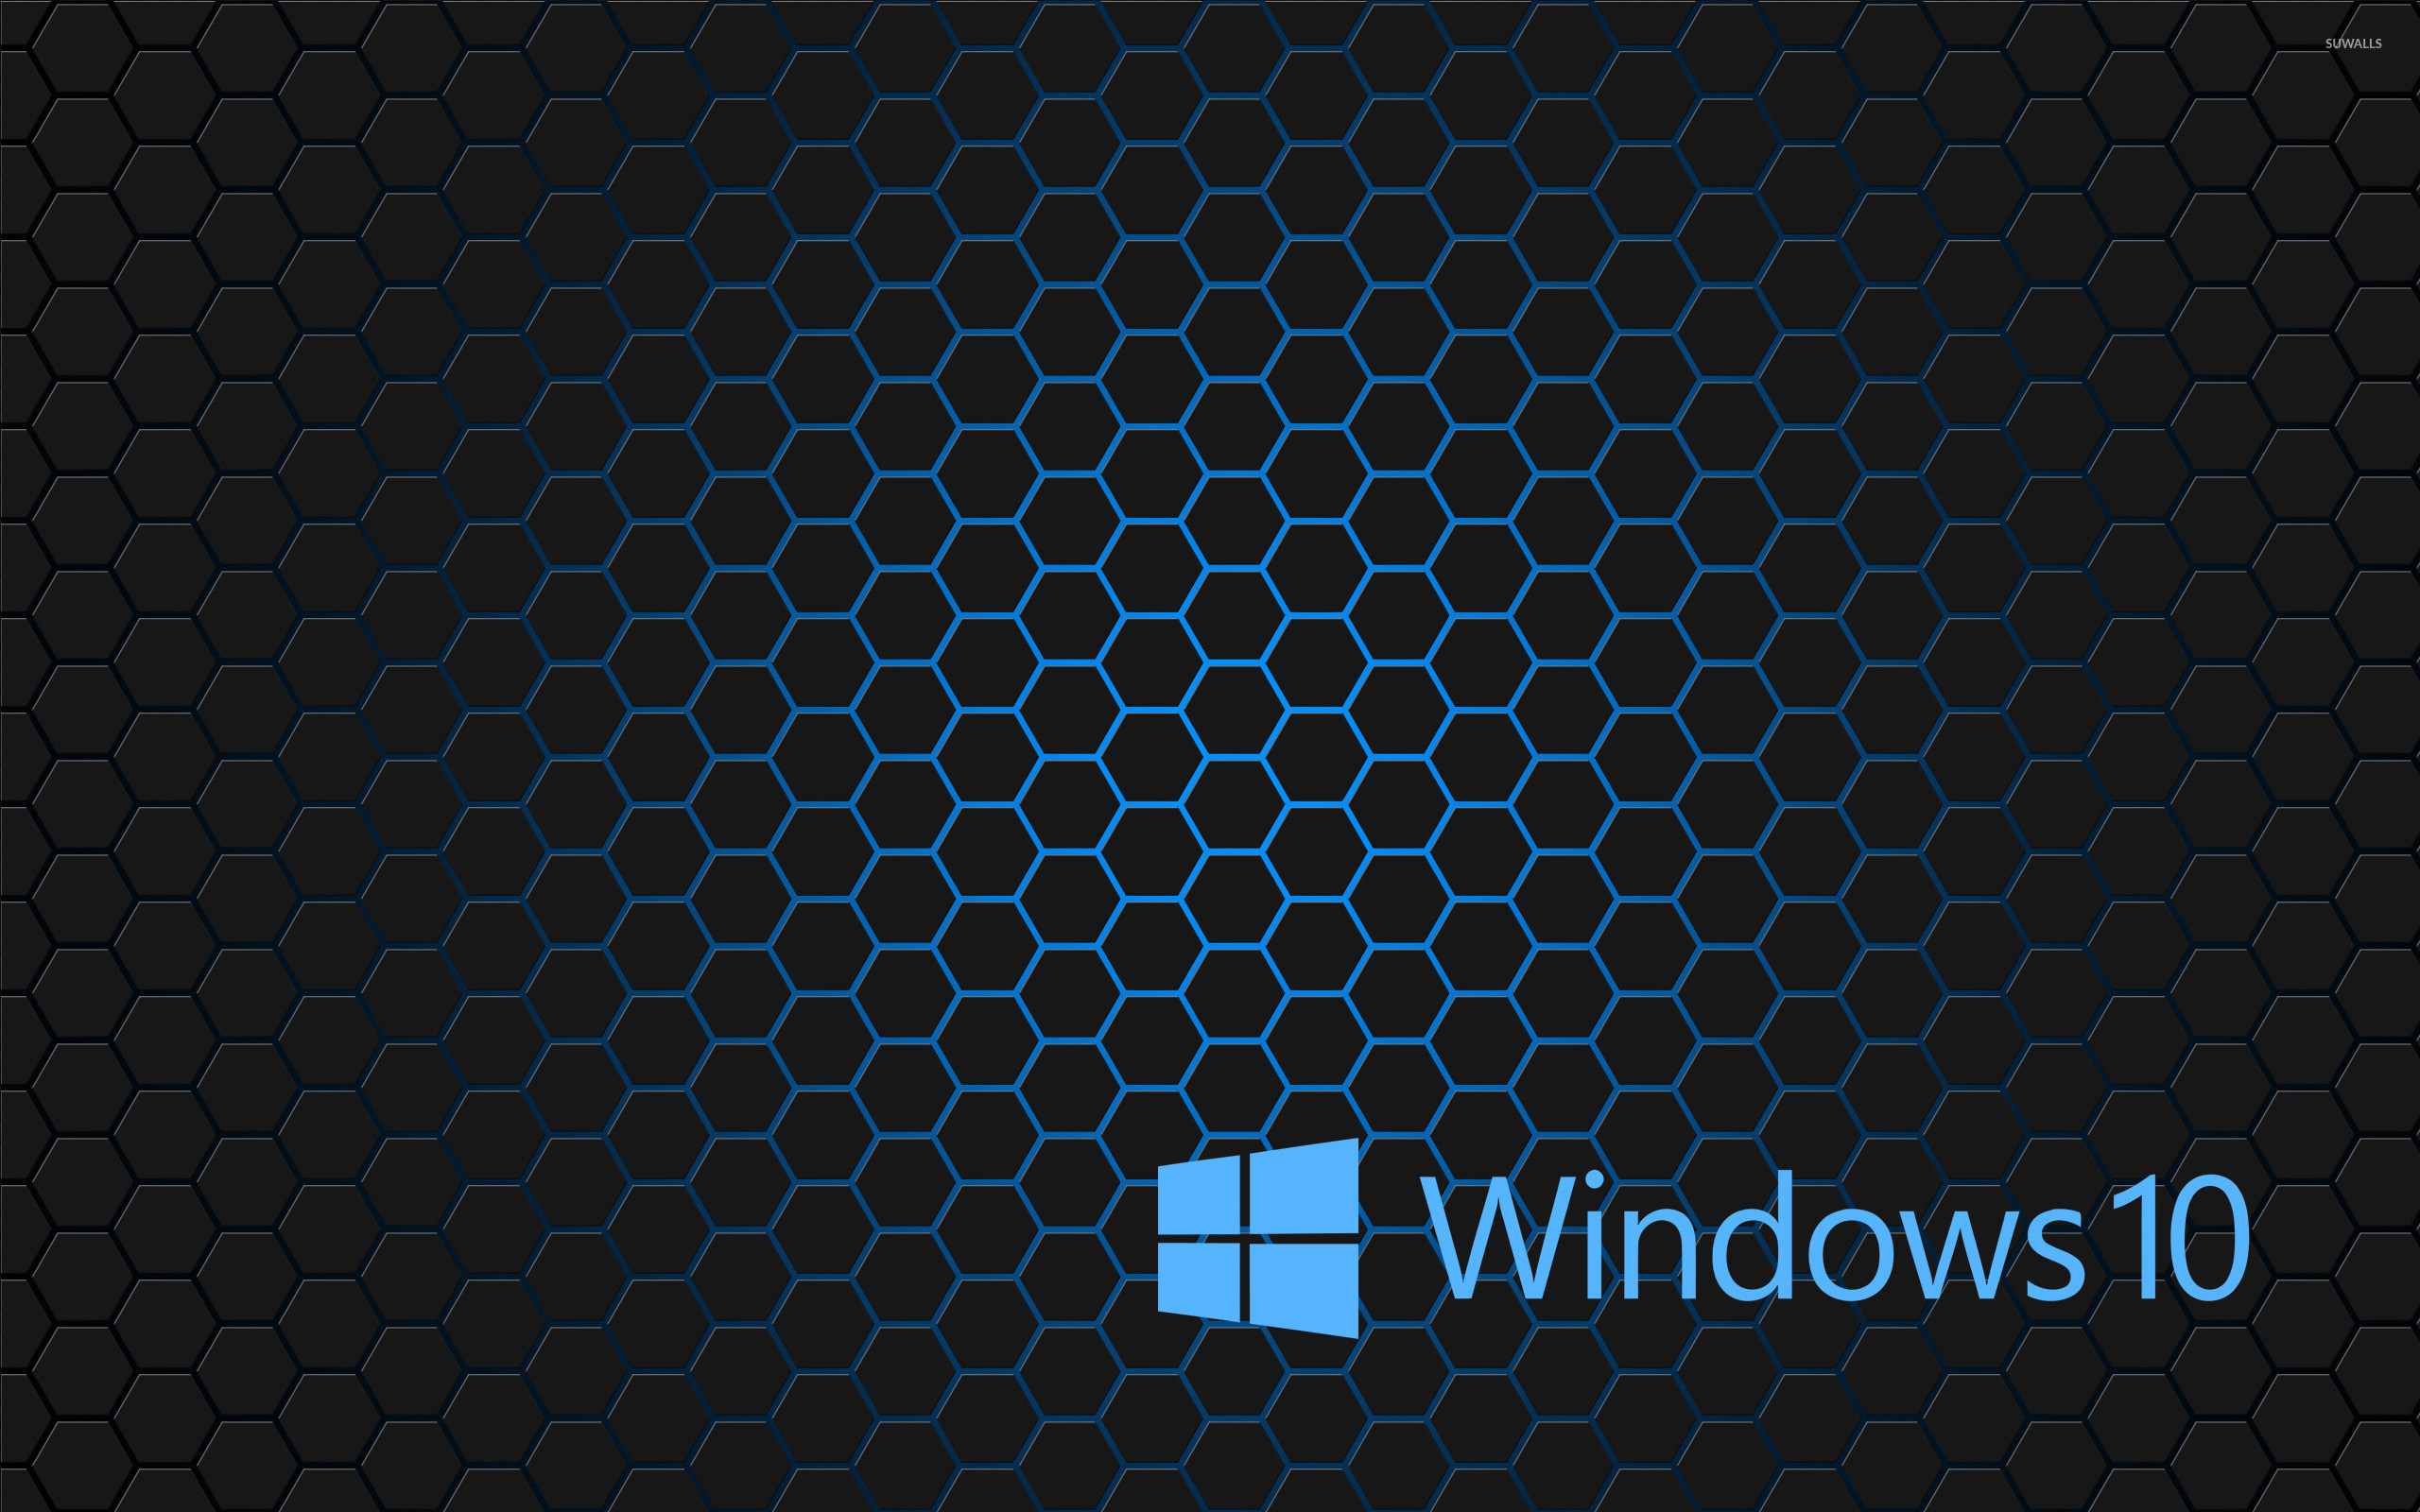 2560x1600 Windows 10 blue text logo on hexagons wallpaper - Computer wallpapers .